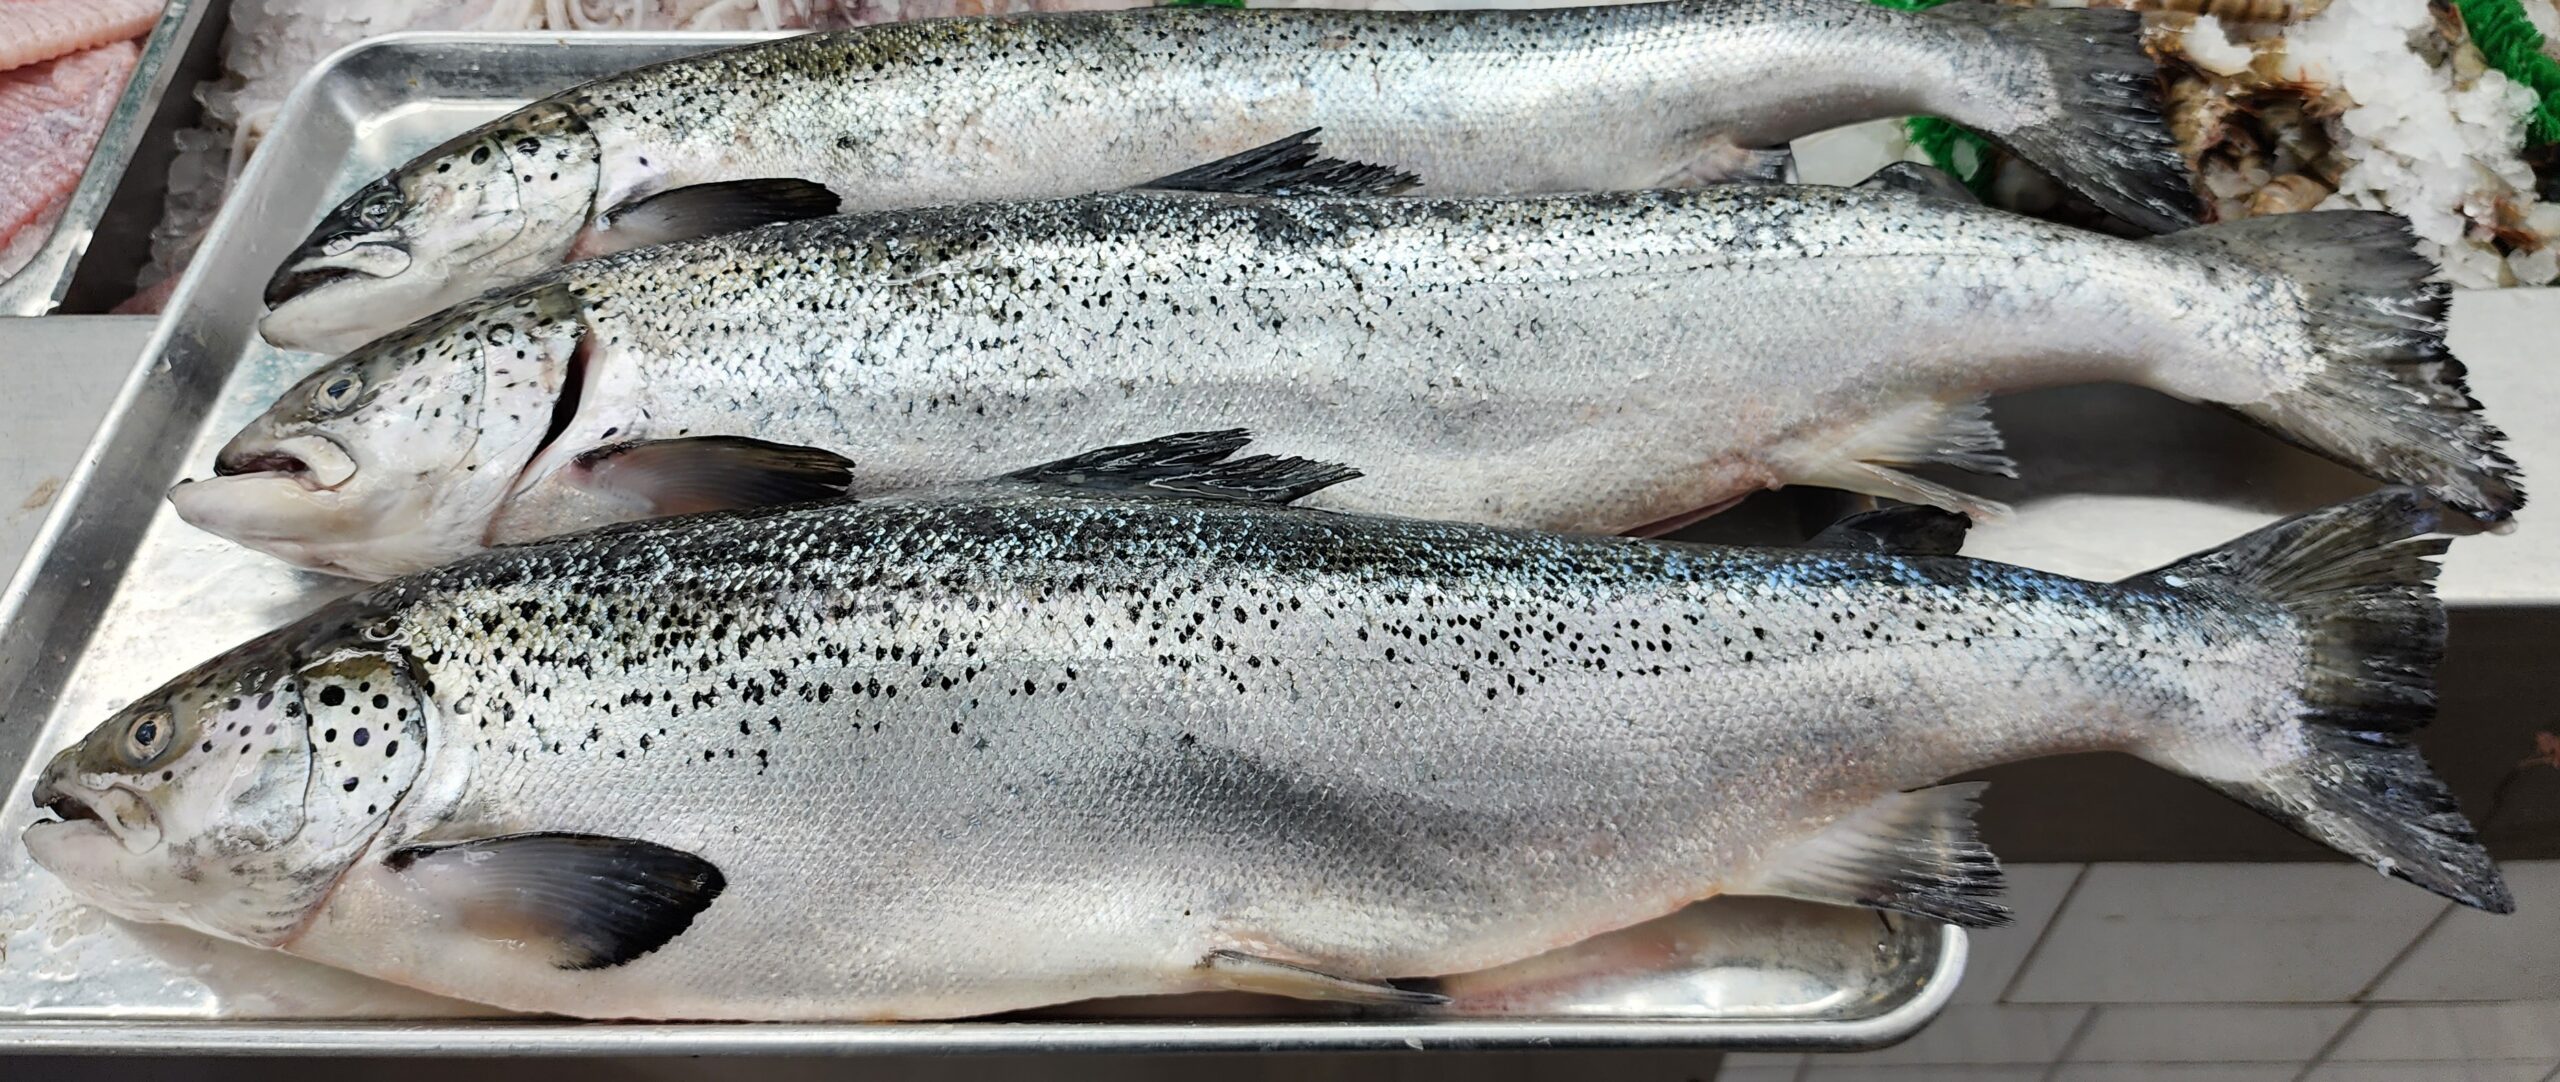 Fresh Atlantic Salmon 10LBS FISH - KOSHER